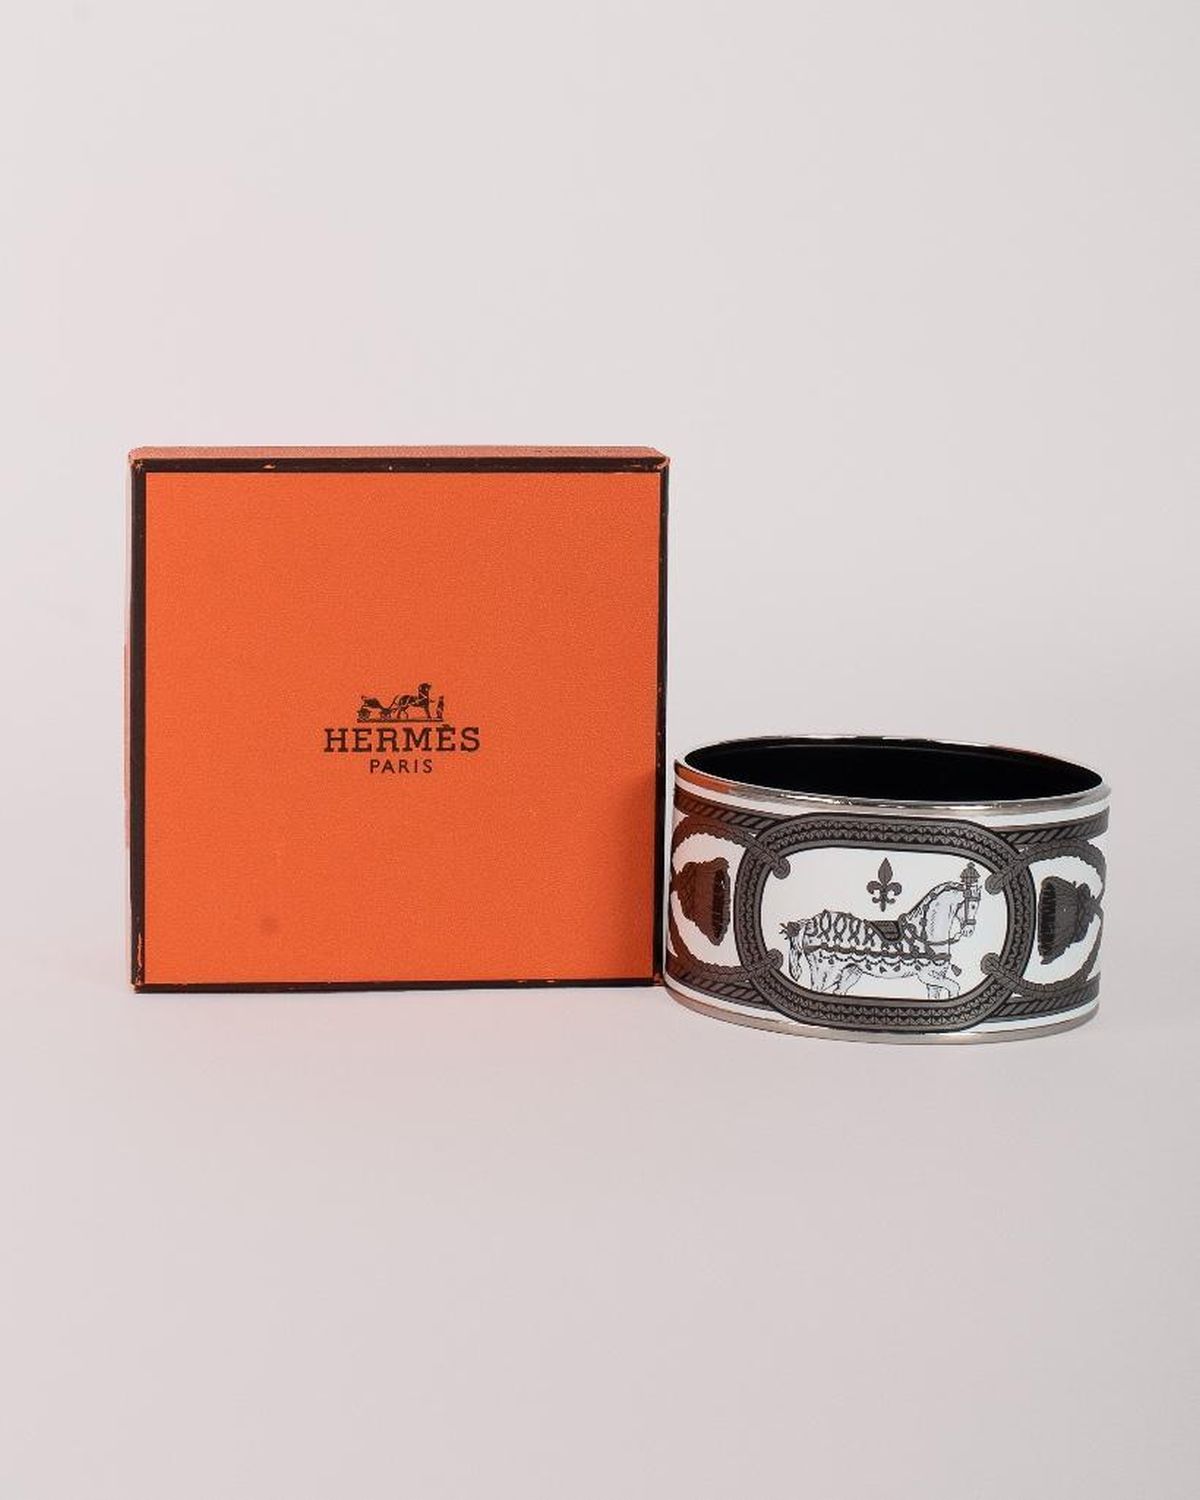 Vintage Hermes Paris Enamel Bangle Bracelet - Image 2 of 11